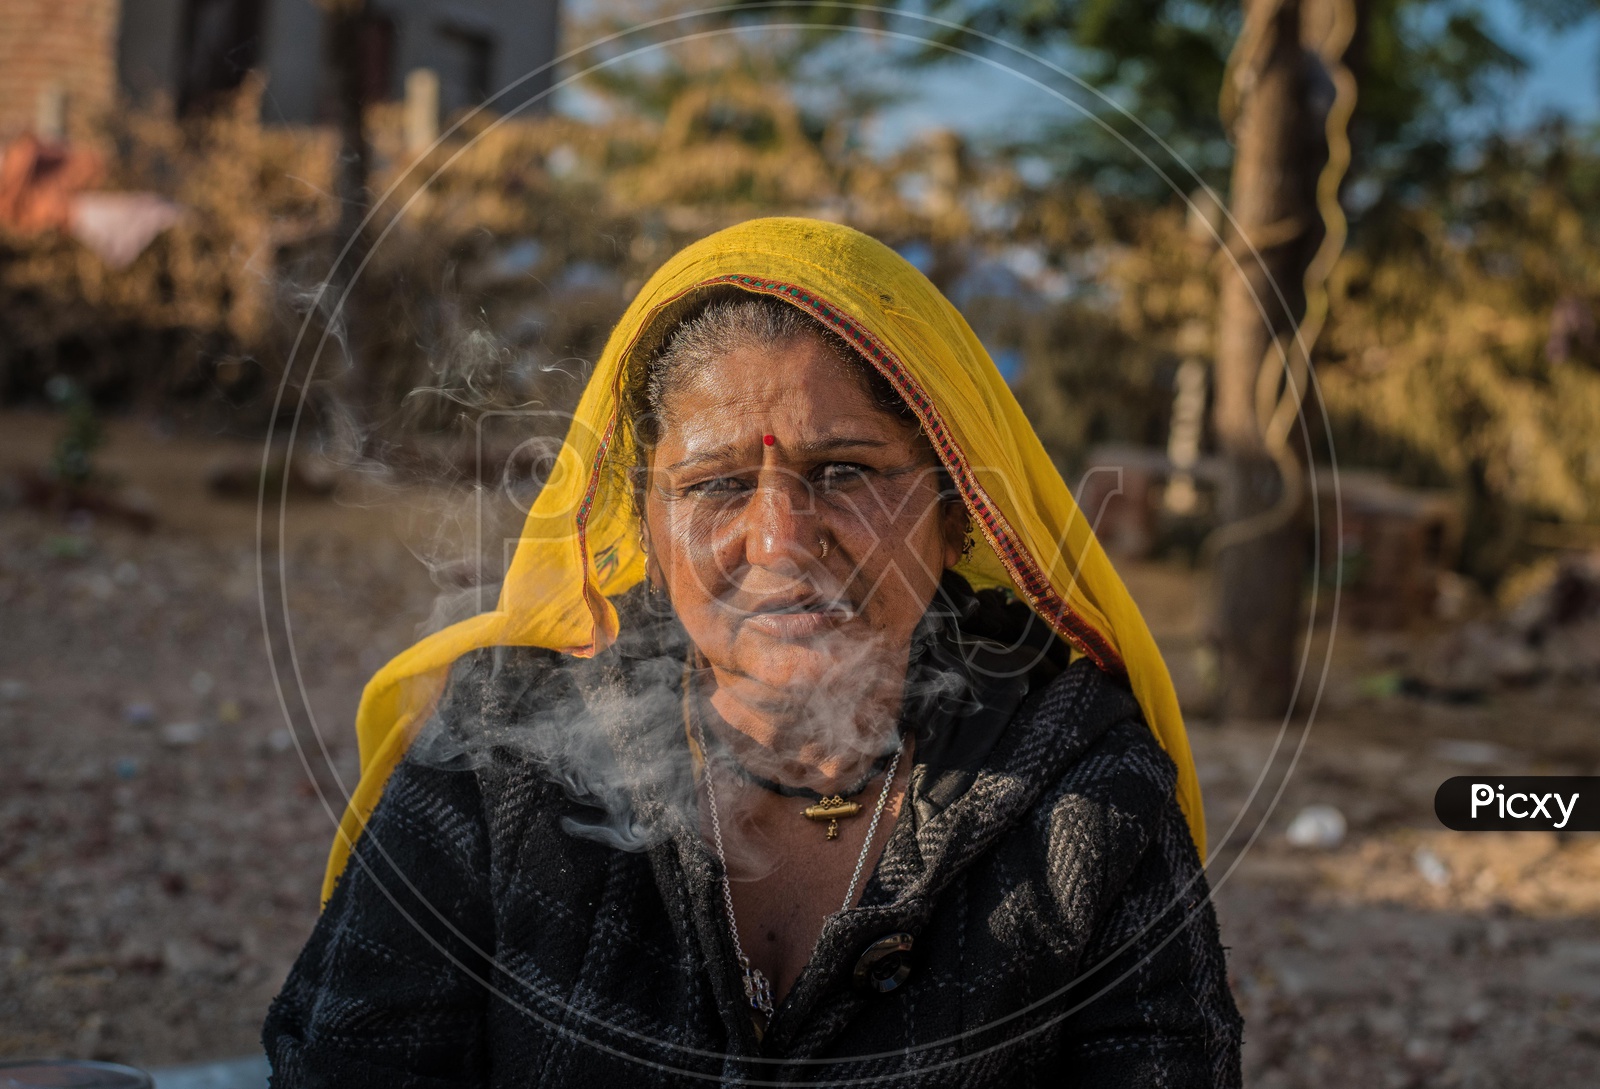 A Gypsy women and smoke